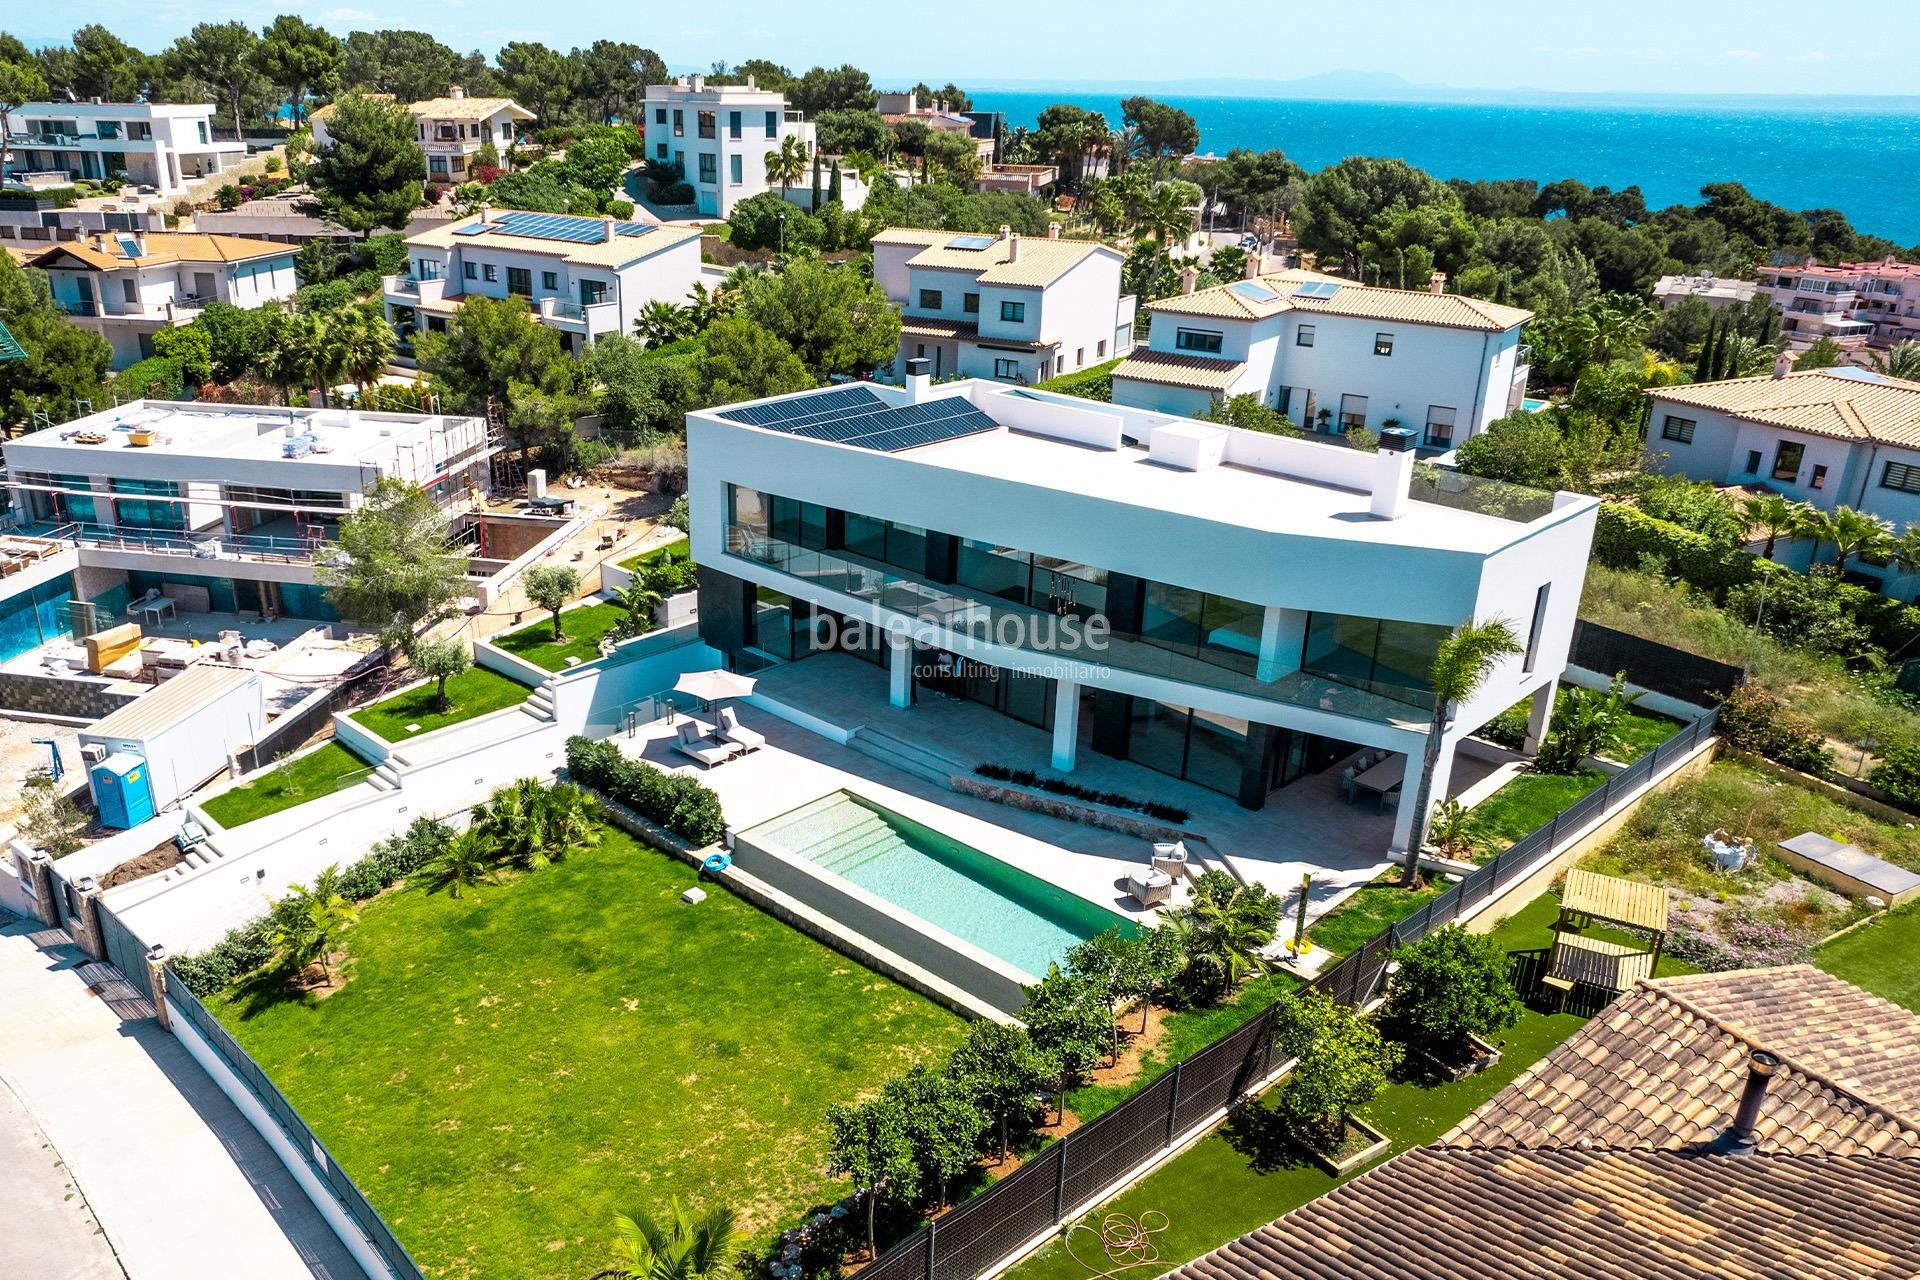 Gran villa de diseño moderno y altas calidades a escasa distancia de la playa en Cala Vinyes